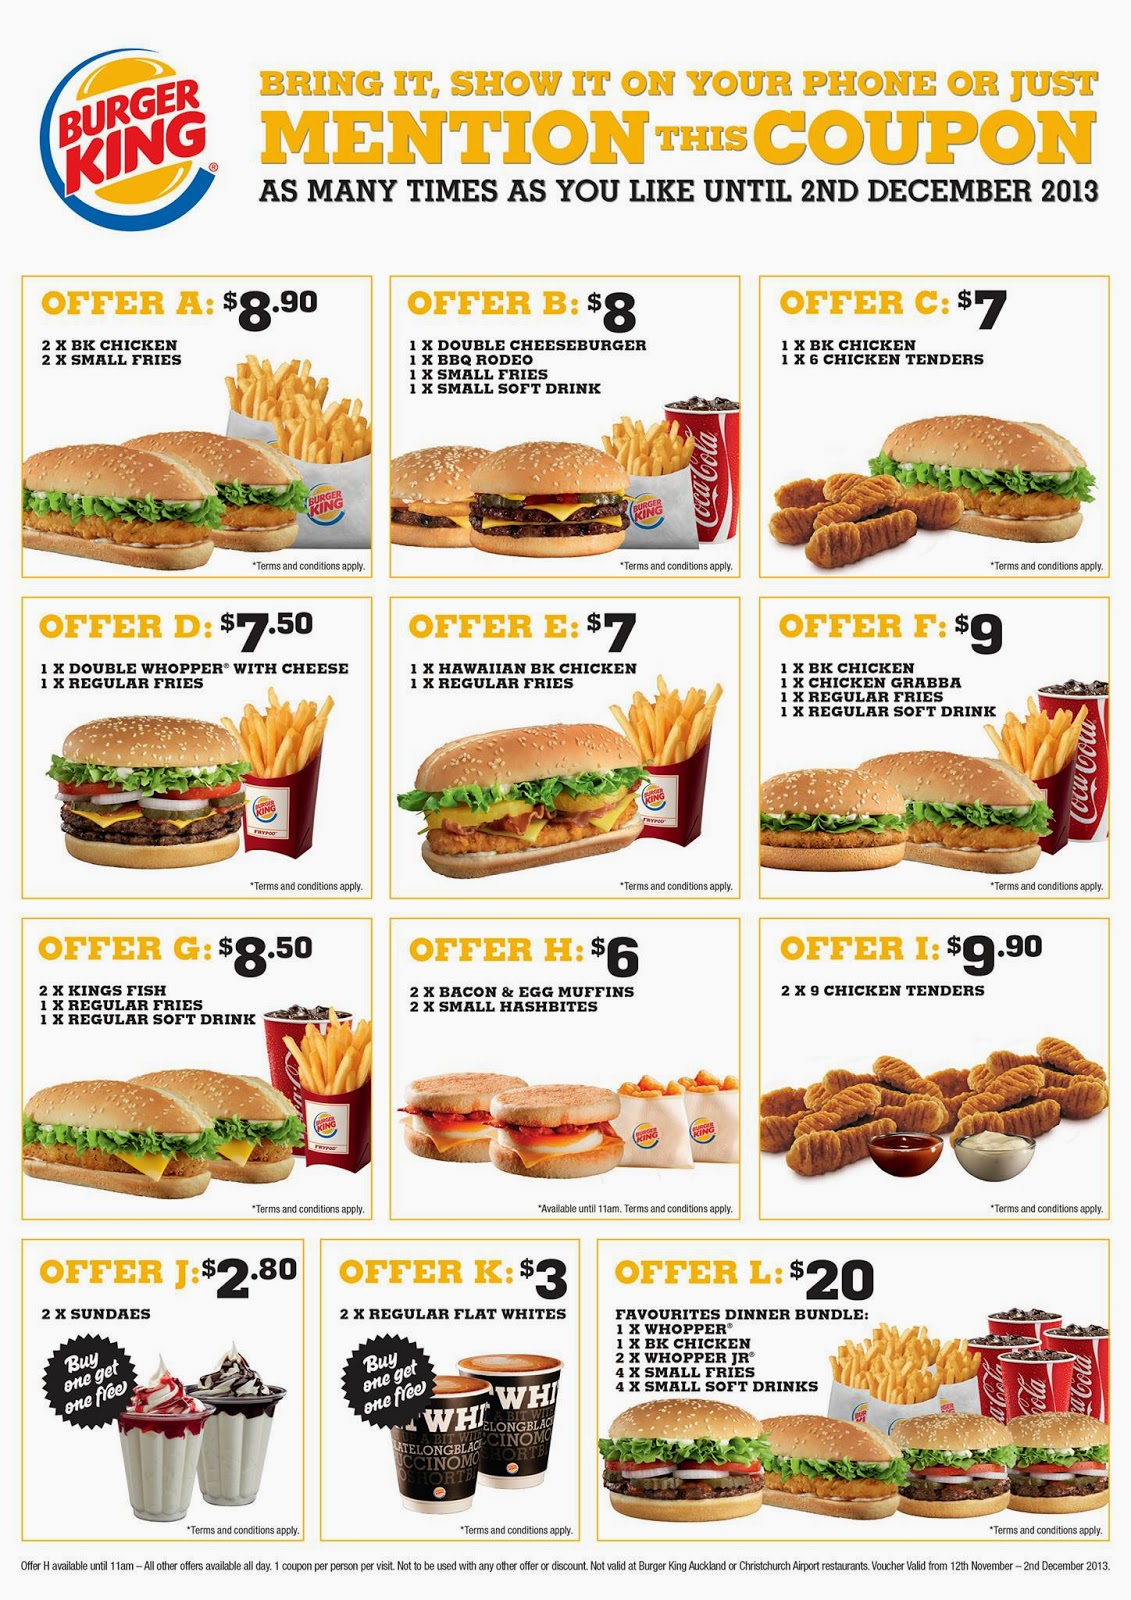 Burger-King-Coupons-Printable-Free-2106 (2) – Printable Coupons Online - Burger King Free Coupons Printable